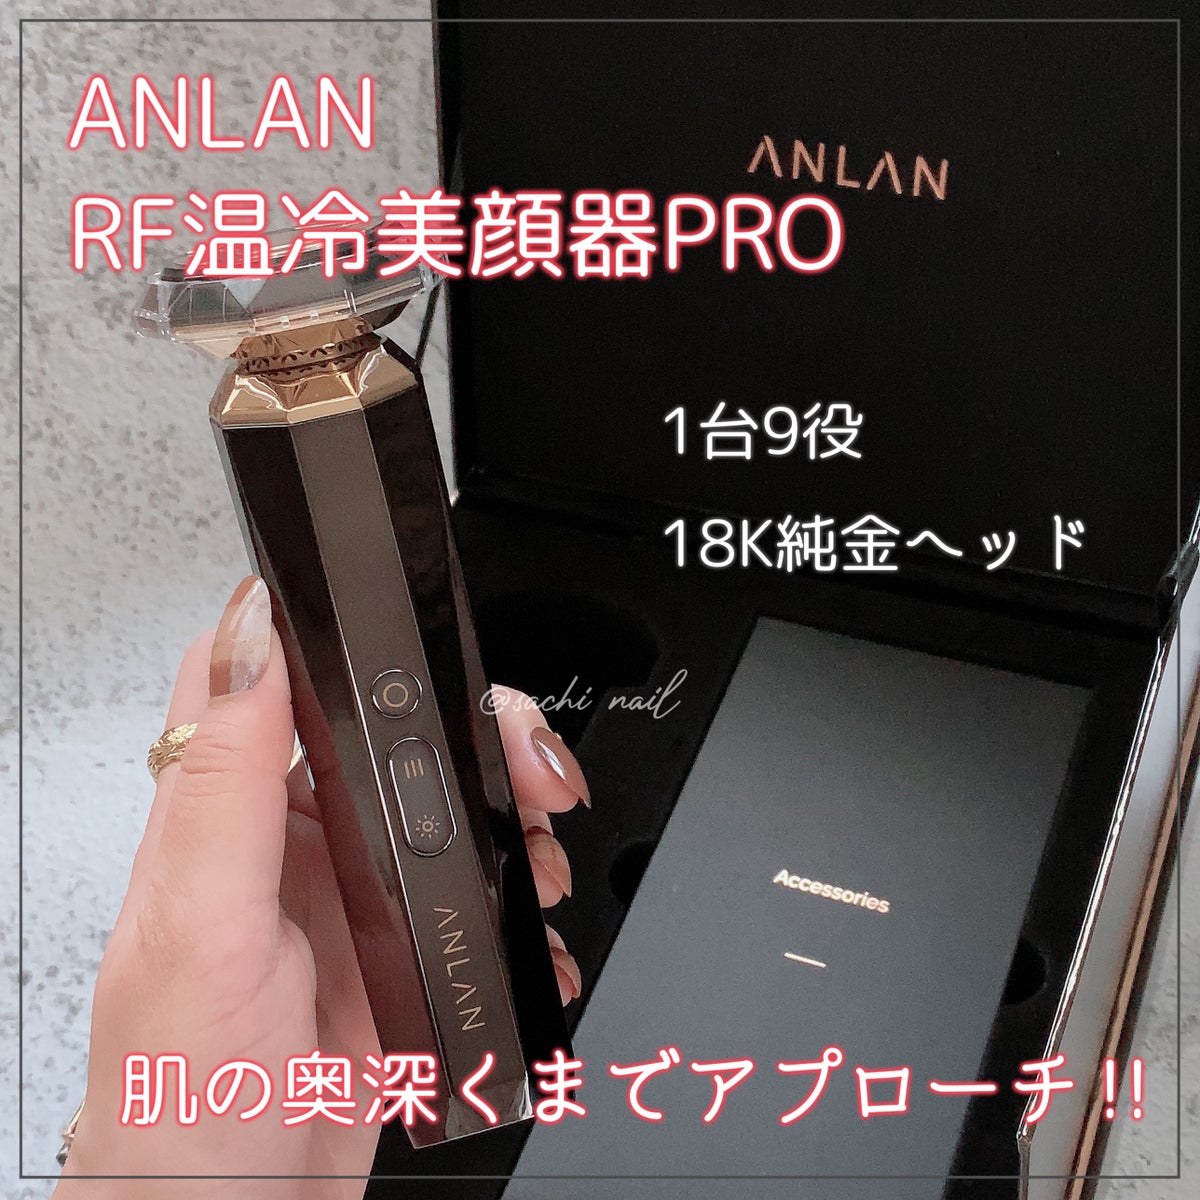 ANLAN RF温冷美顔器PRO エイジングケア リフトケア 18K純金メッキ